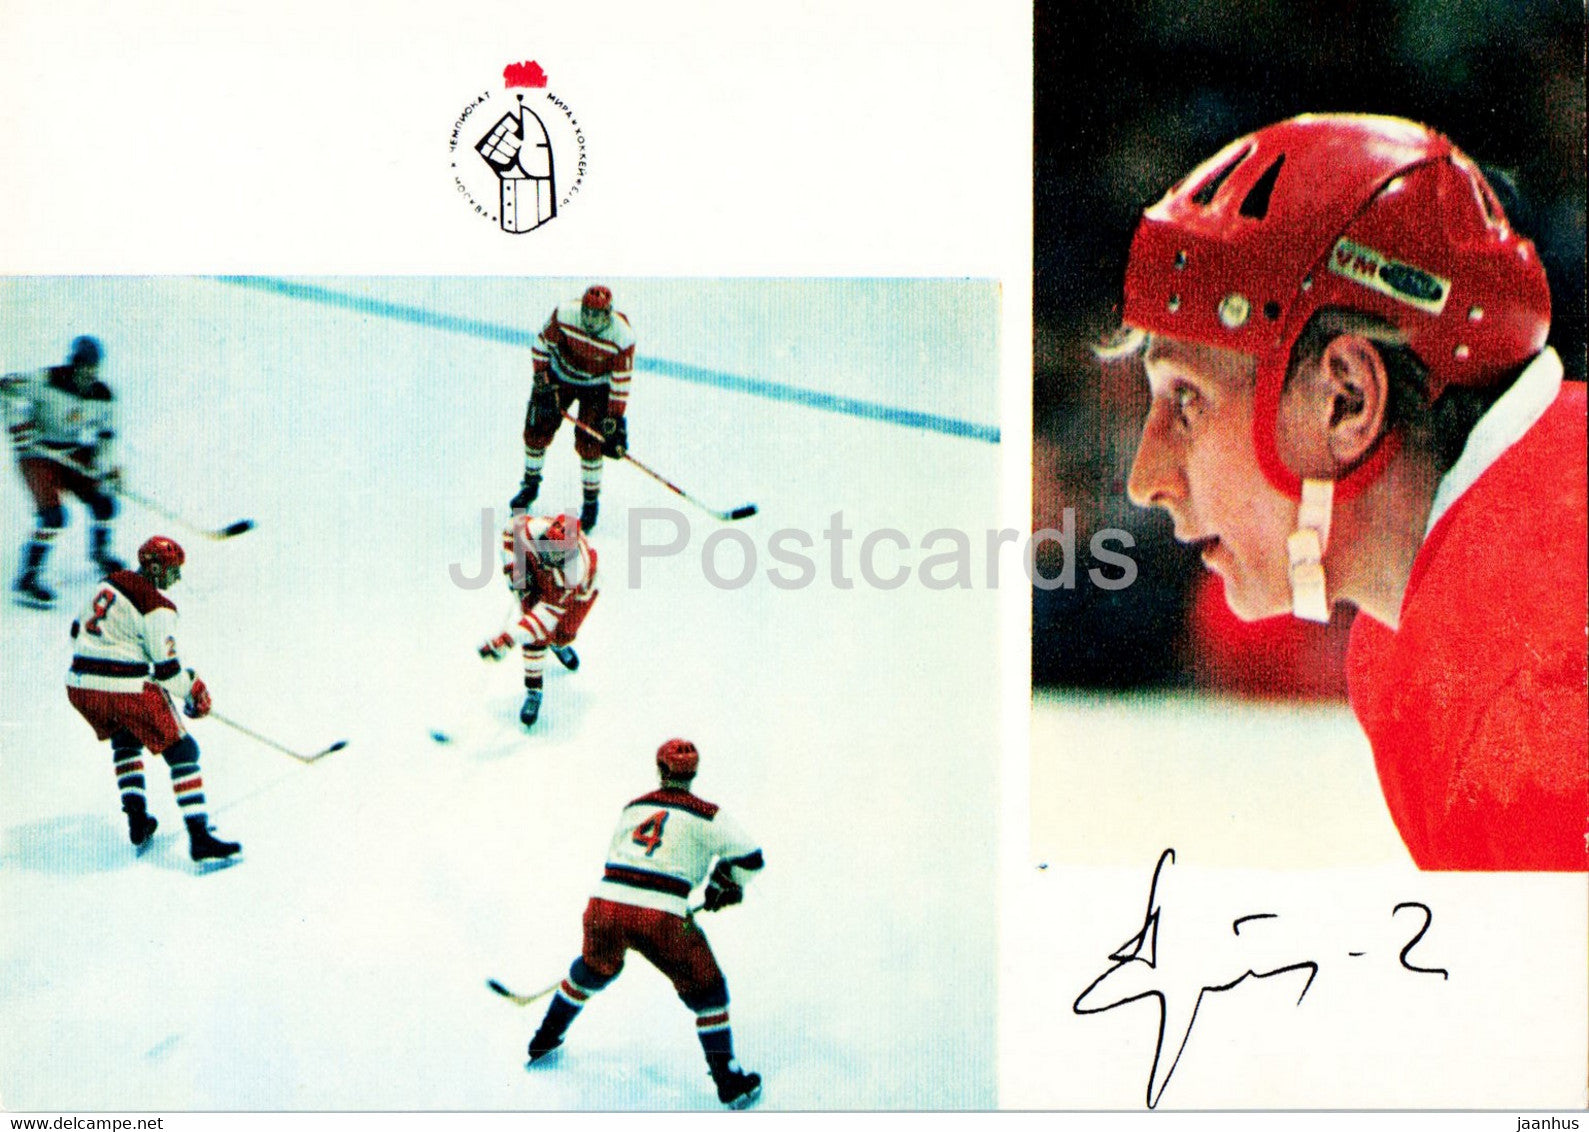 Alexander Gusev - USSR ice hockey team - world champion 1973 - 1974 - Russia USSR - unused - JH Postcards